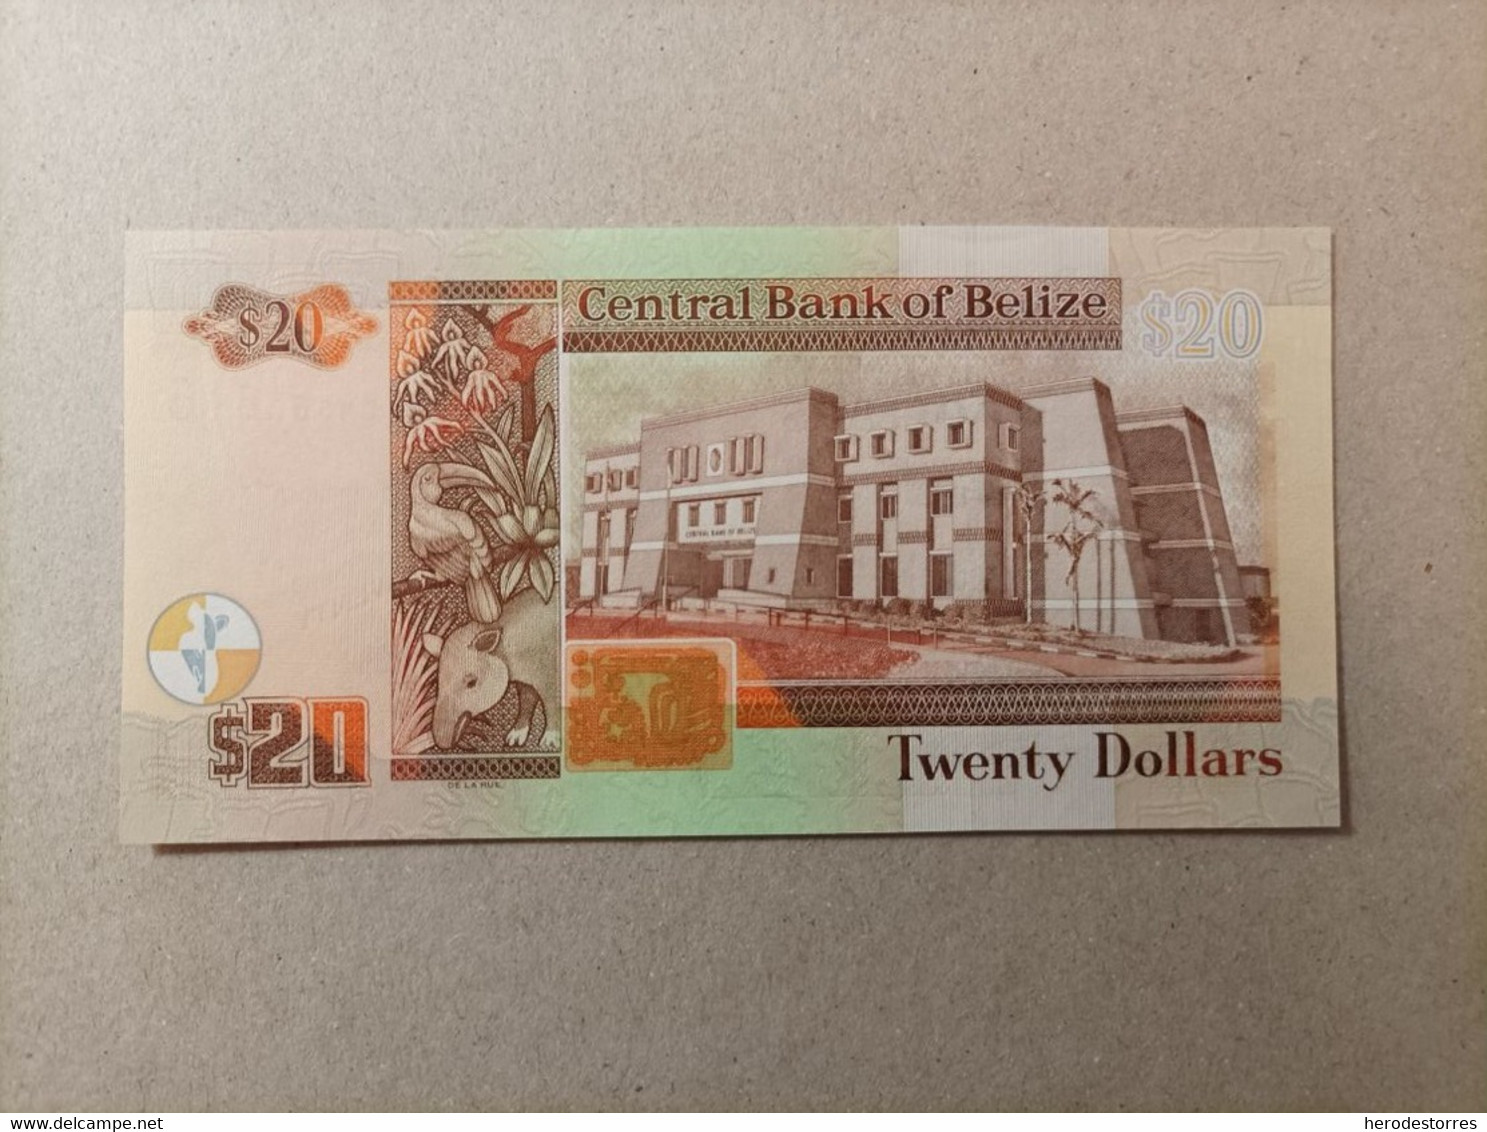 Billete De Belize De 20 Dolares, Año 2012, Conmemorativo Del 30 Aniversario Del Banco Central, UNC - Belize